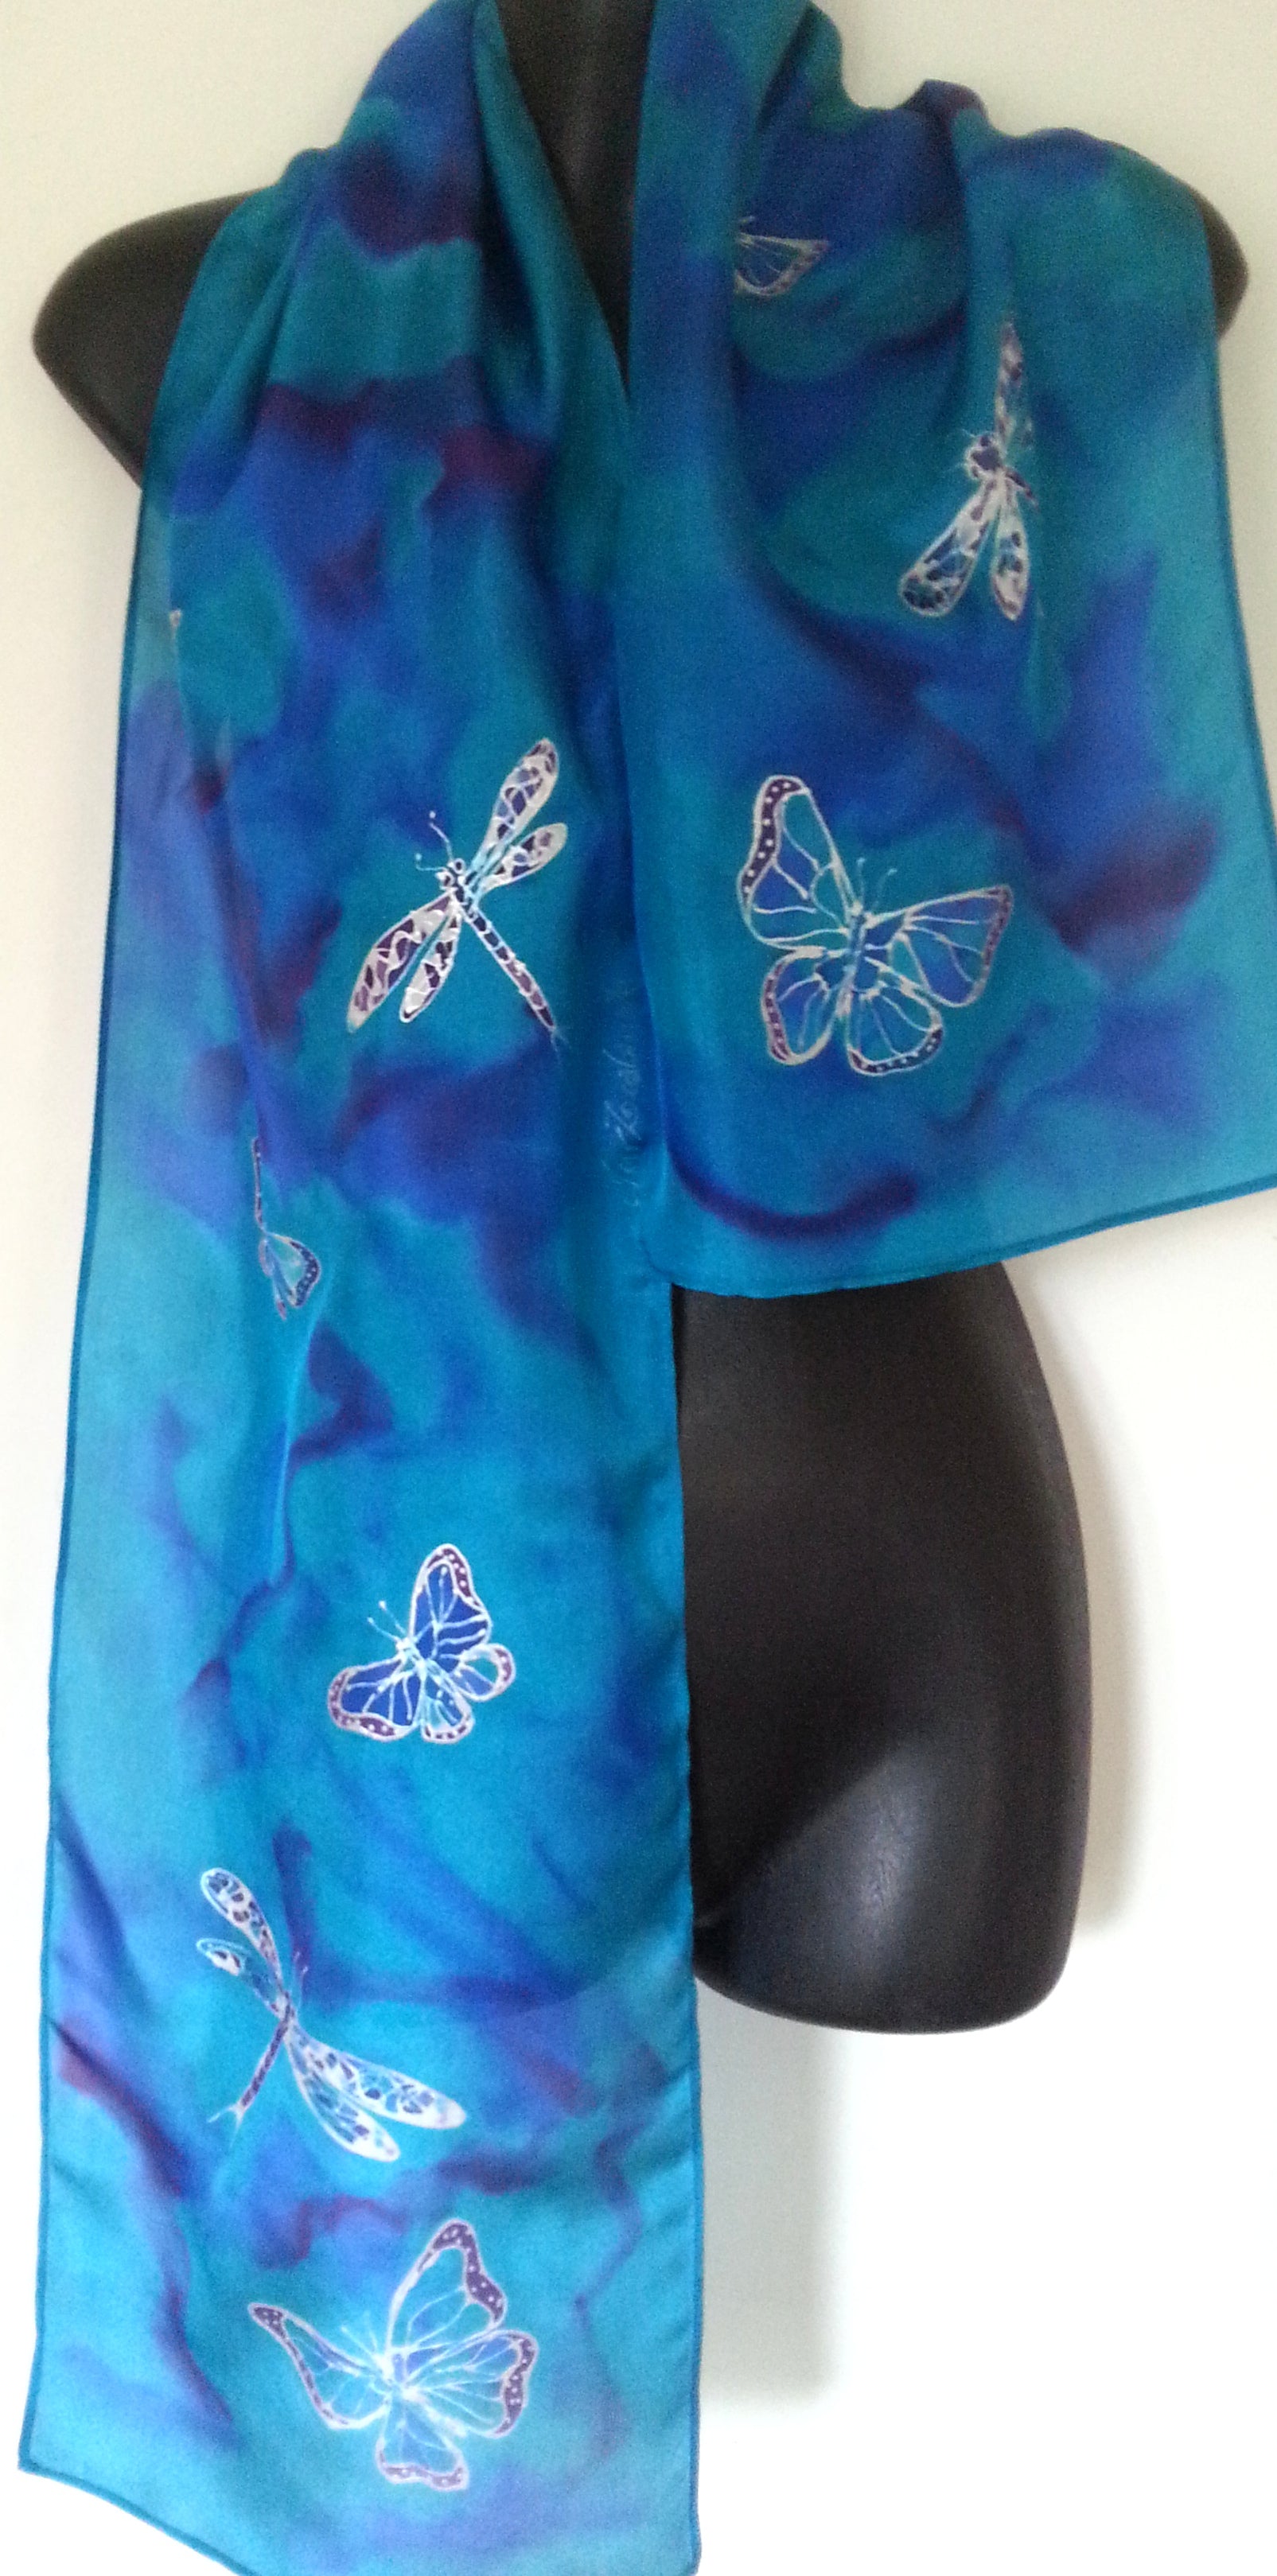 Butterflies & Dragonflies - Hand painted Silk Scarf - Satherley Silks NZ